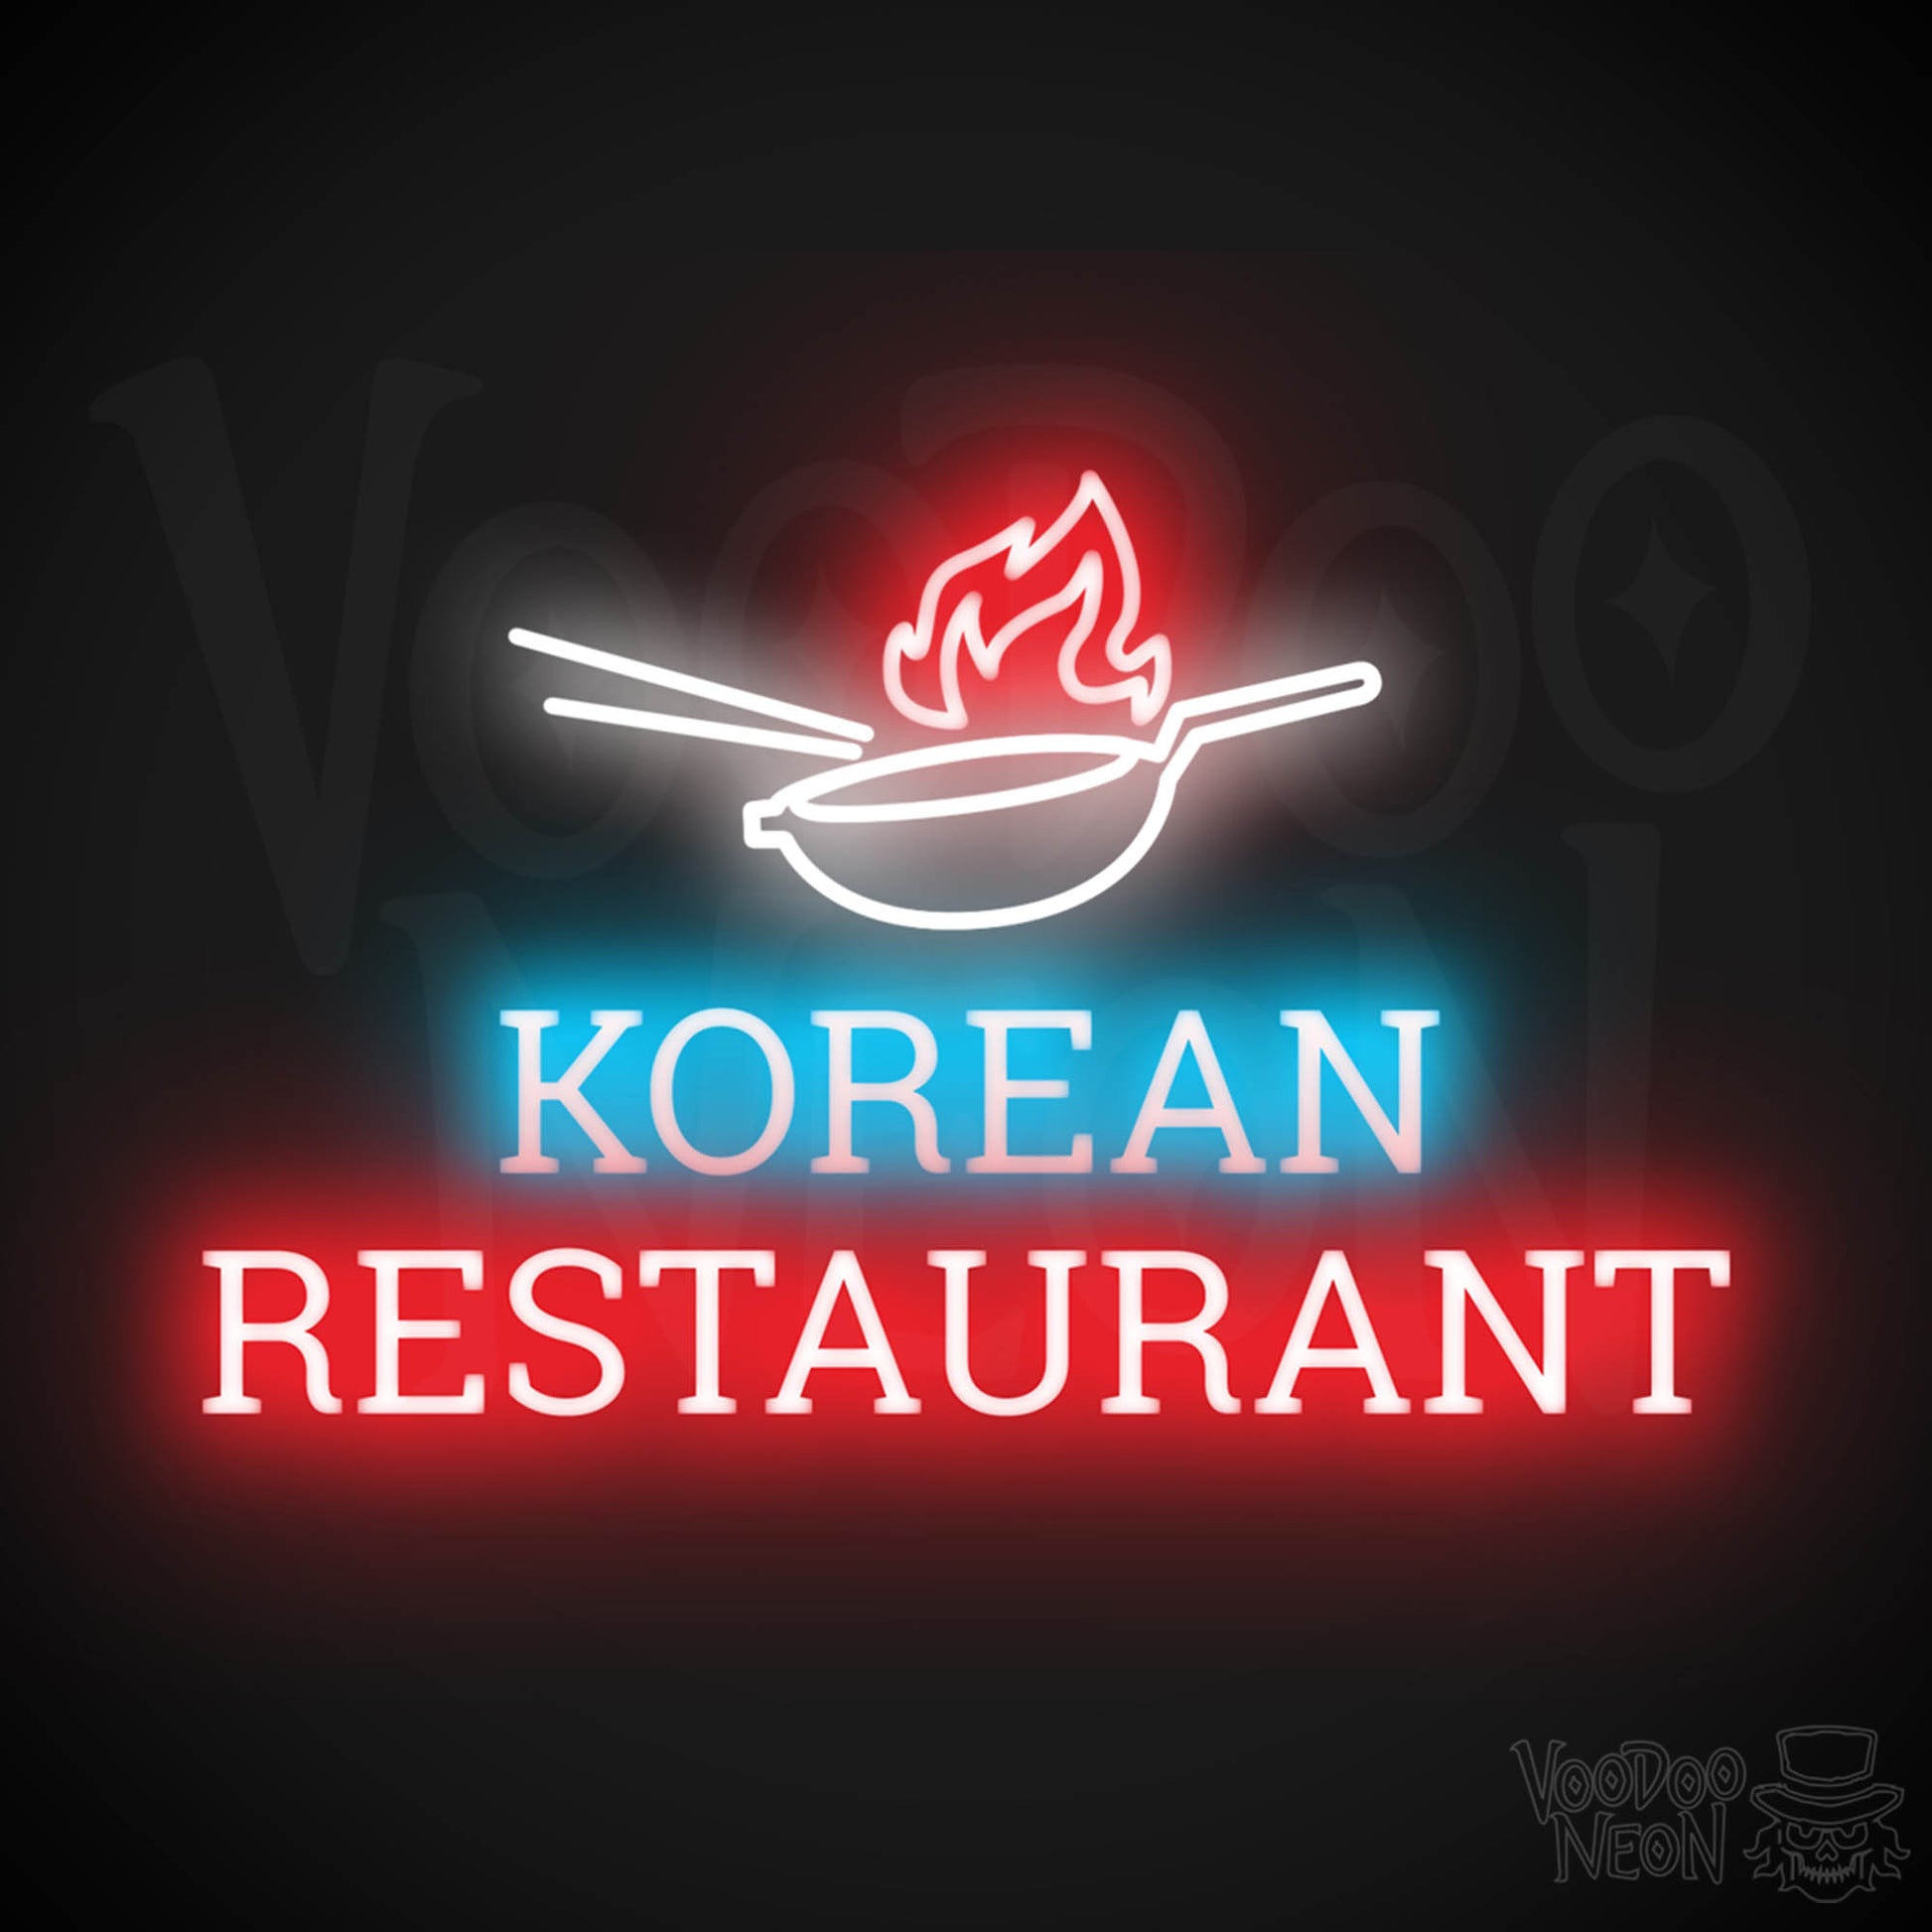 Korean Restaurant LED Neon - Multi-Color